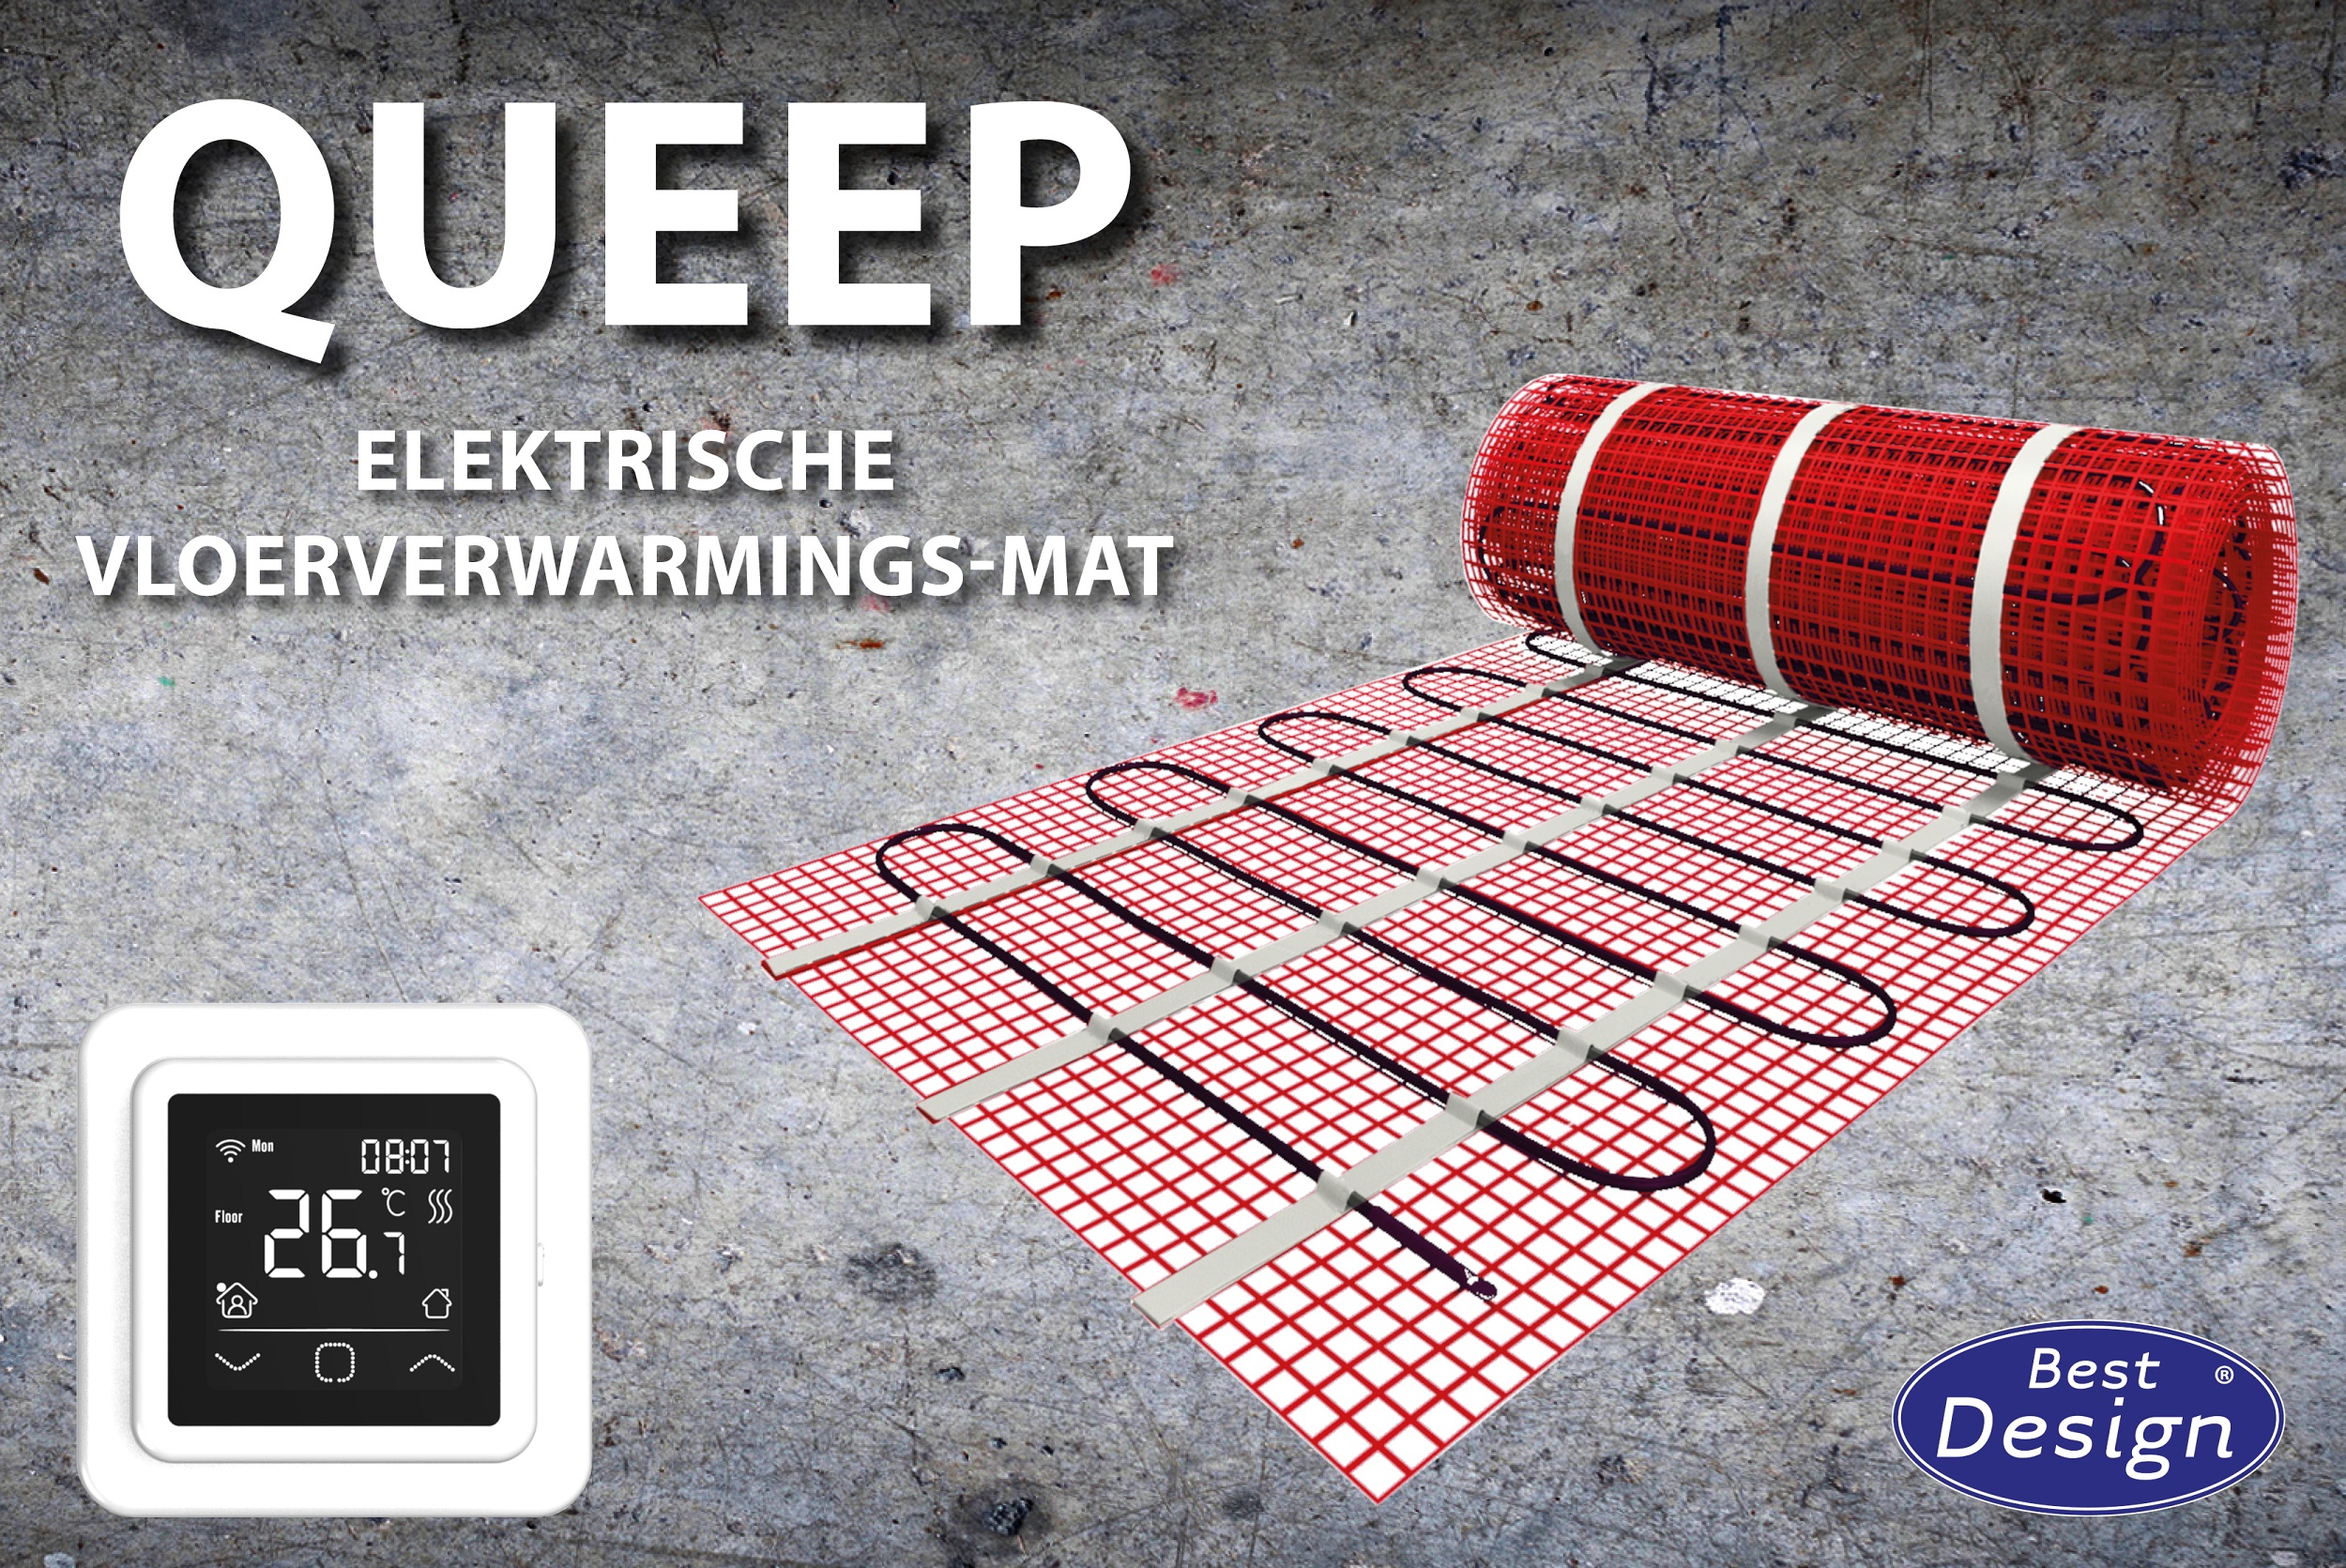 Best-Design "Queep" elektrische vloerverwarmings-mat 3,5 m2 Top Merken Winkel